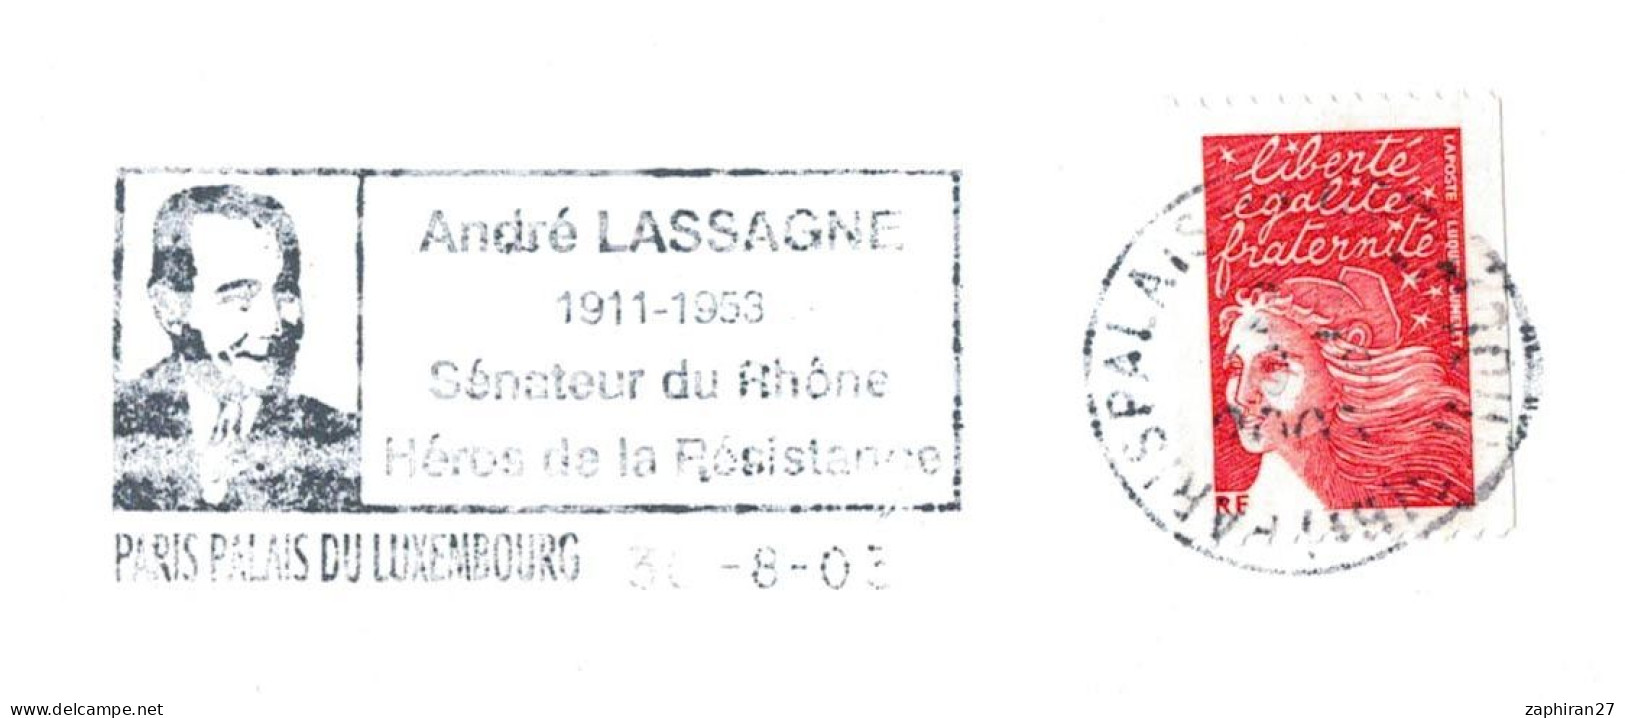 FLAMME PARIS LUXEMBOURG ANDRE LASSAGNE SENATEUR DU RHONE / HEROS DE LA RESISTANCE 2003 #700# - 2. Weltkrieg